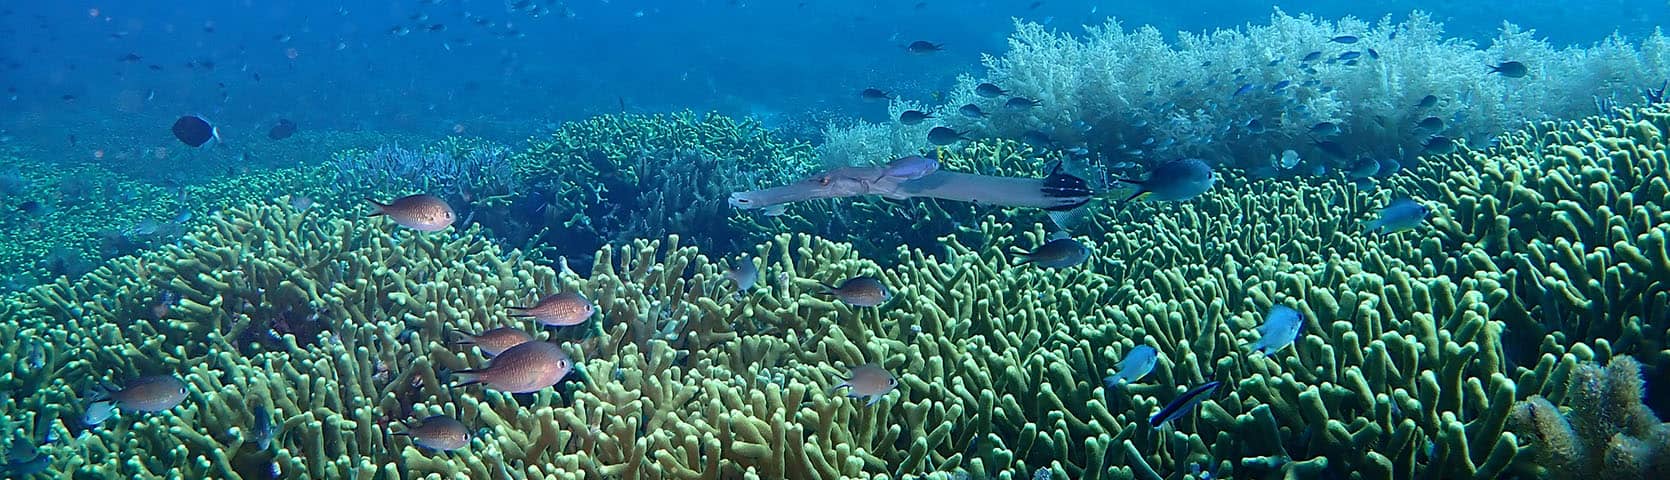 Raja Ampat Coral Reef